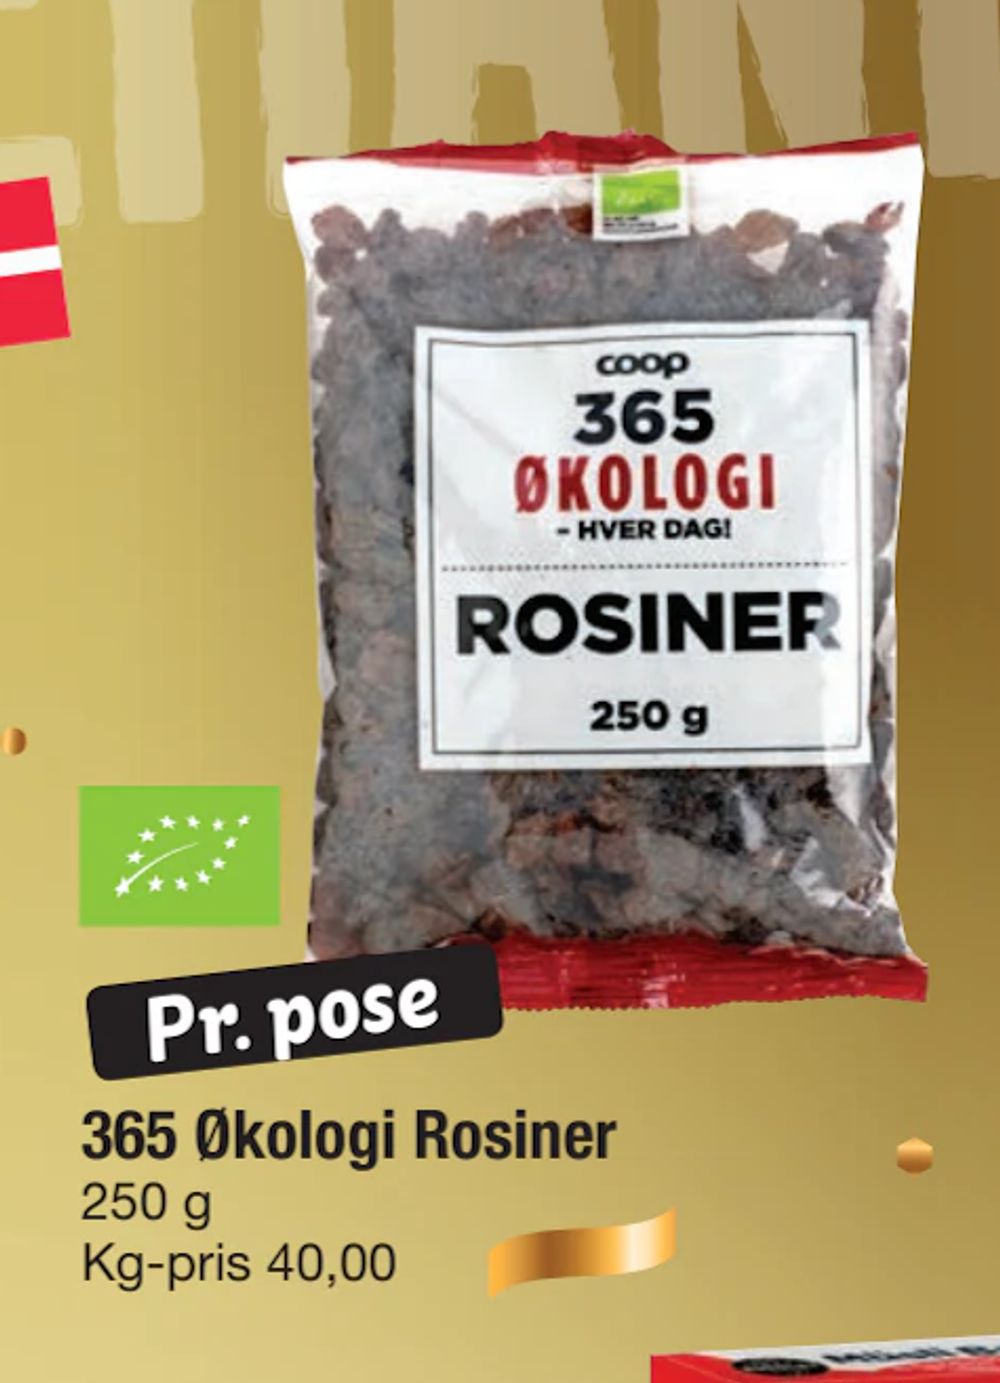 Tilbud på 365 Økologi Rosiner fra fakta Tyskland til 10 kr.